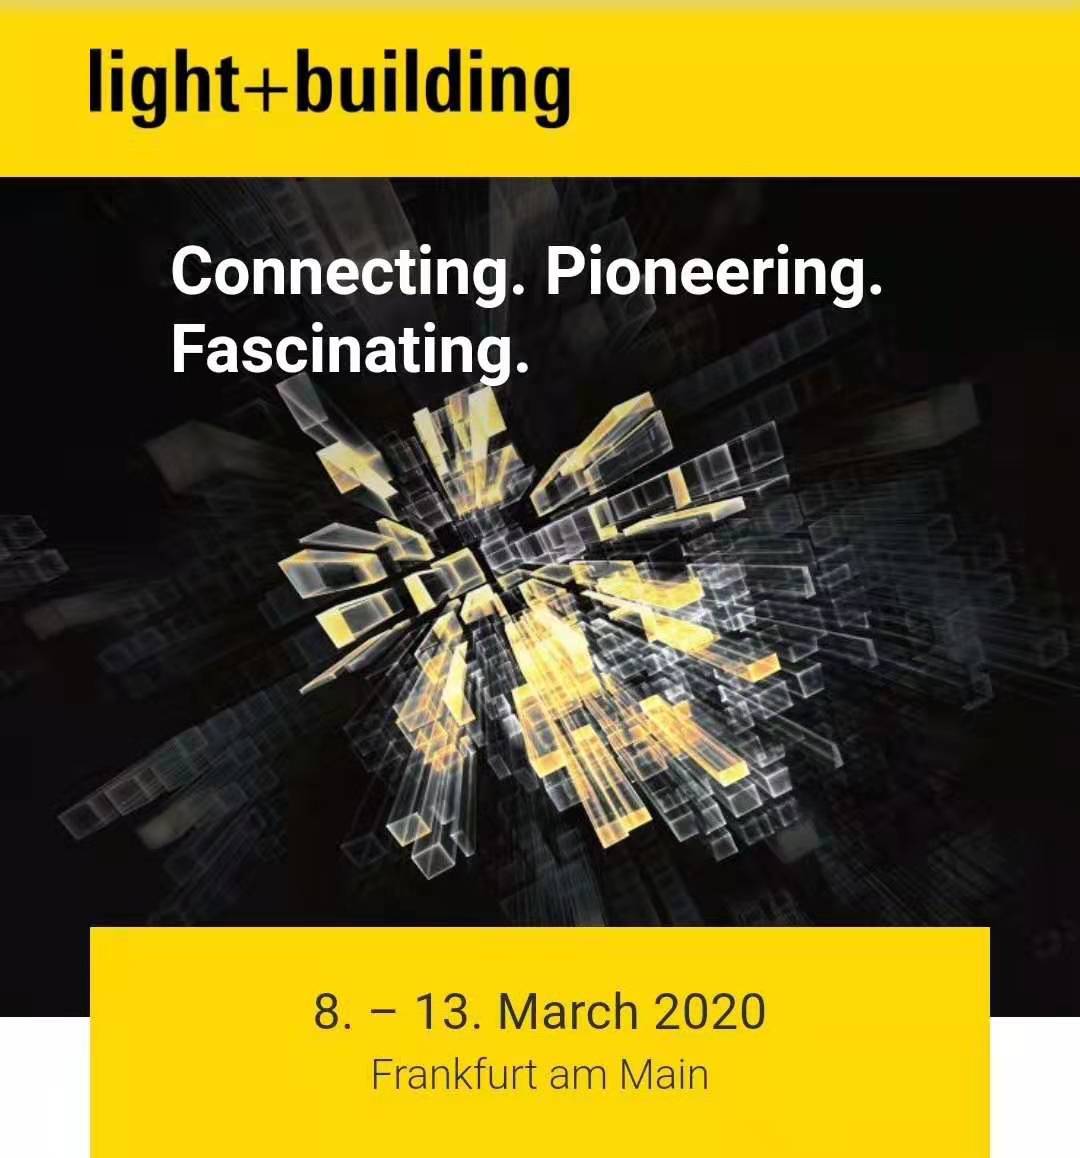 2020年法兰克福国际灯光照明及建筑技术与设备展览会